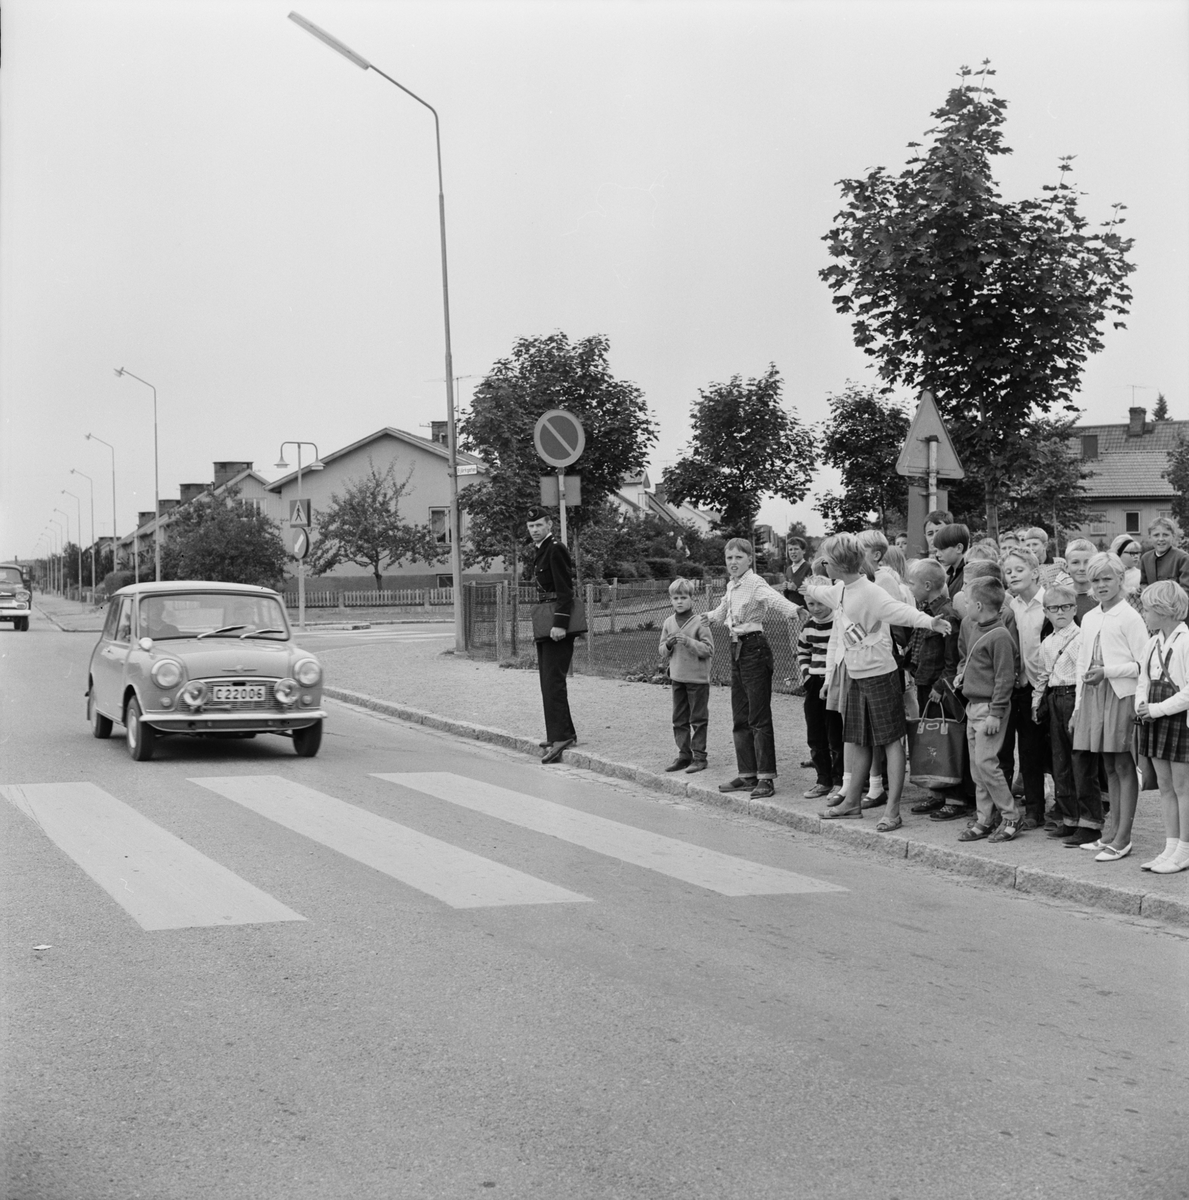 "200 uppsalabarn trafikövervakare vid folkskolorna", Uppsala augusti 1965